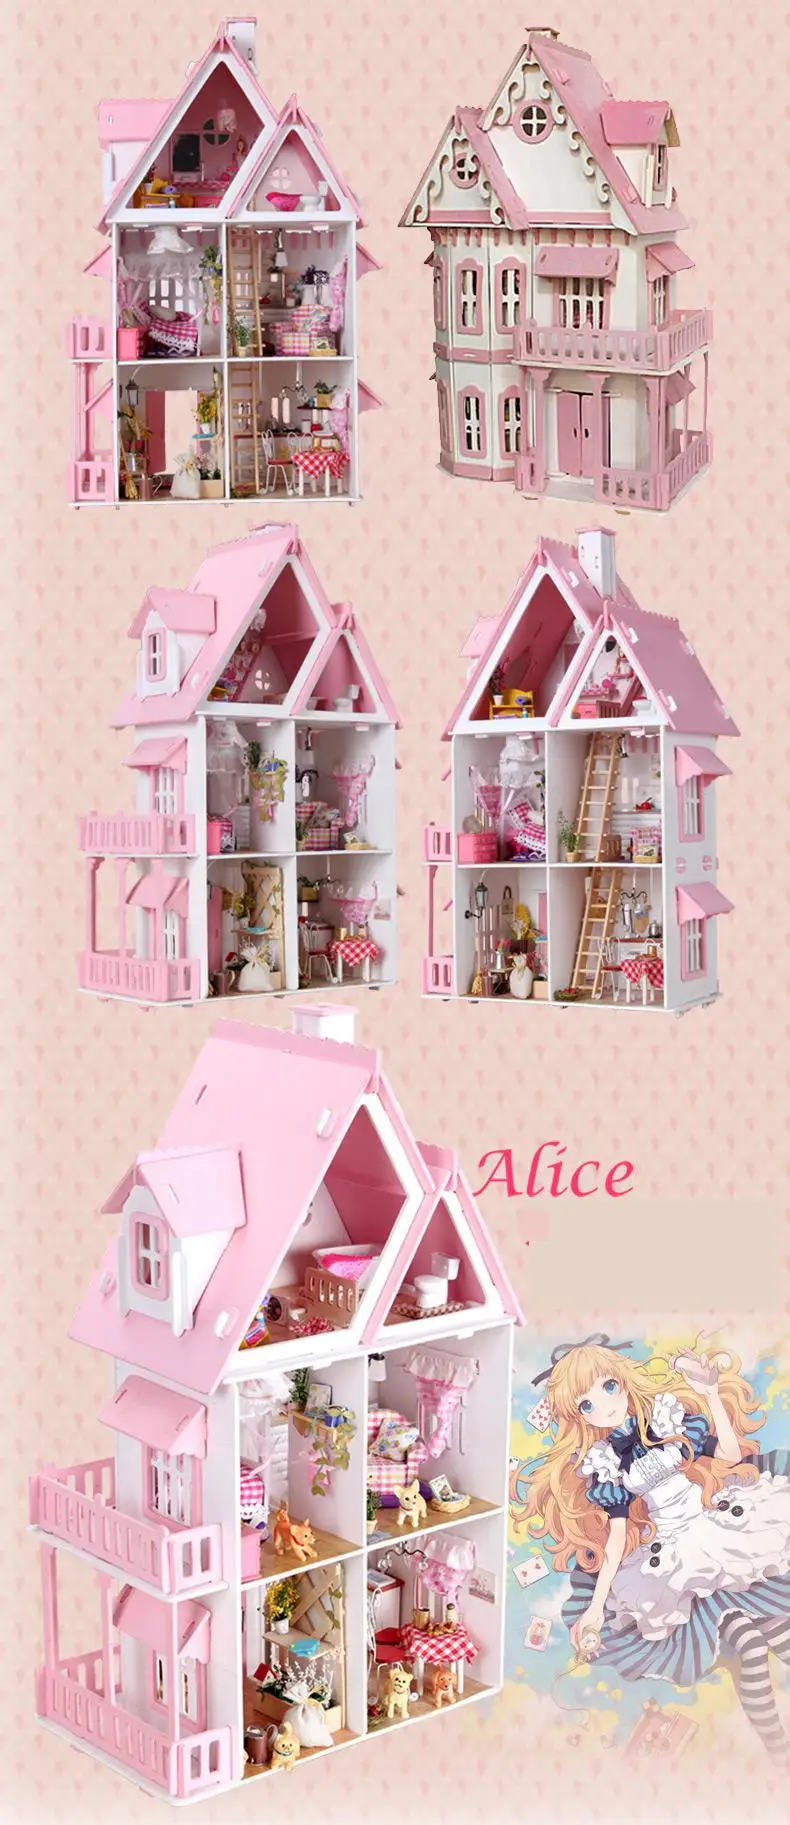 Sun Кукла Алиса дом/деревянная модель Diy/подарок на день рождения представляет большую виллу здание Dioramas